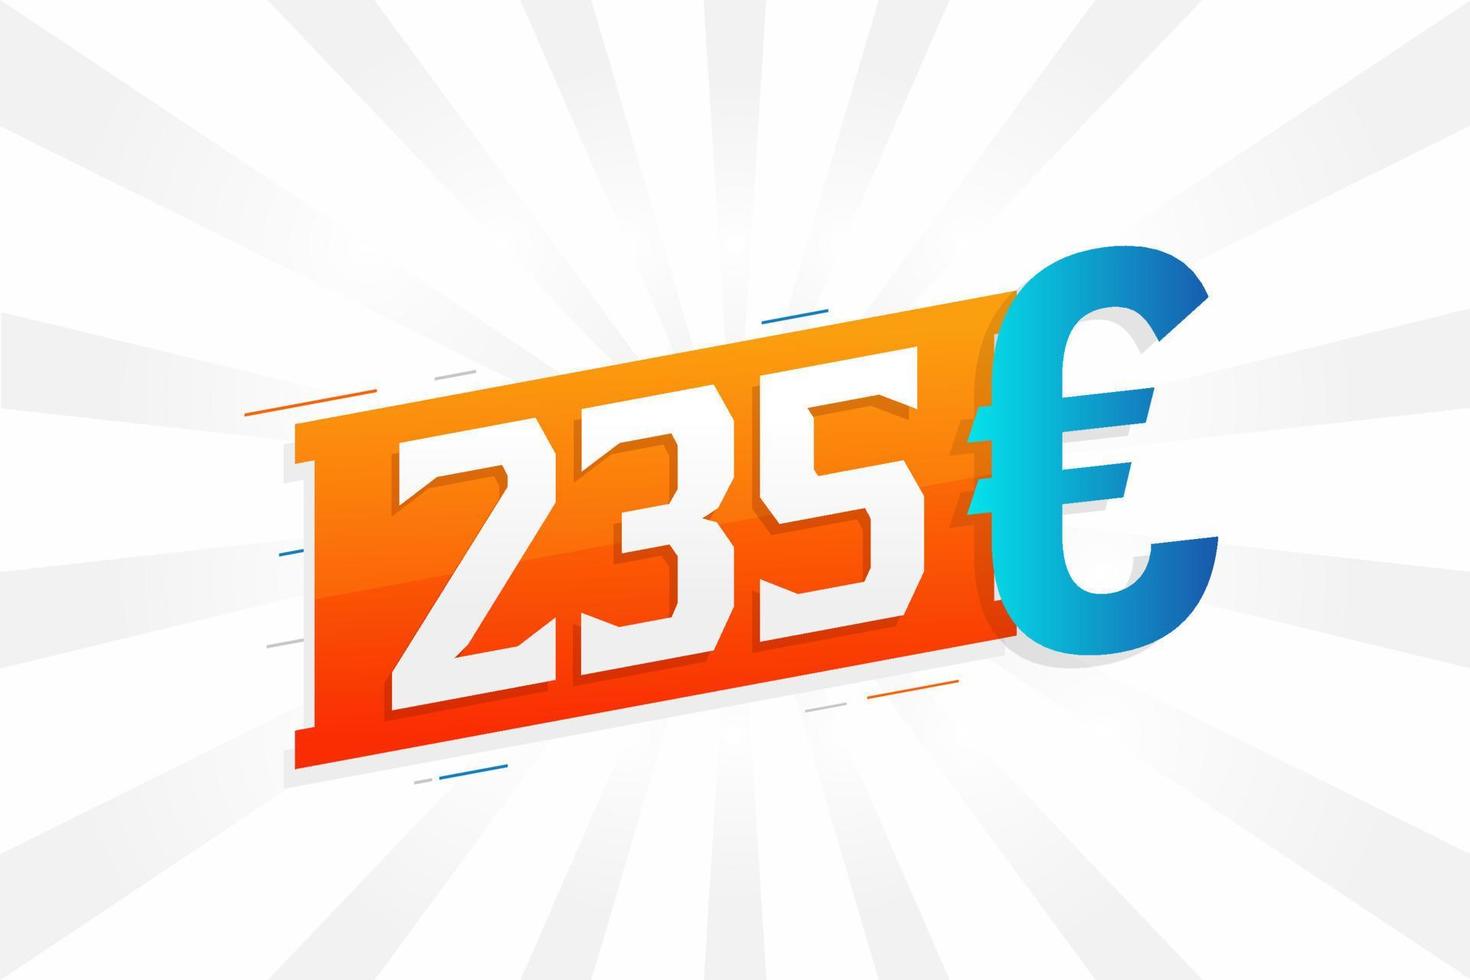 235 Euro Currency vector text symbol. 235 Euro European Union Money stock vector